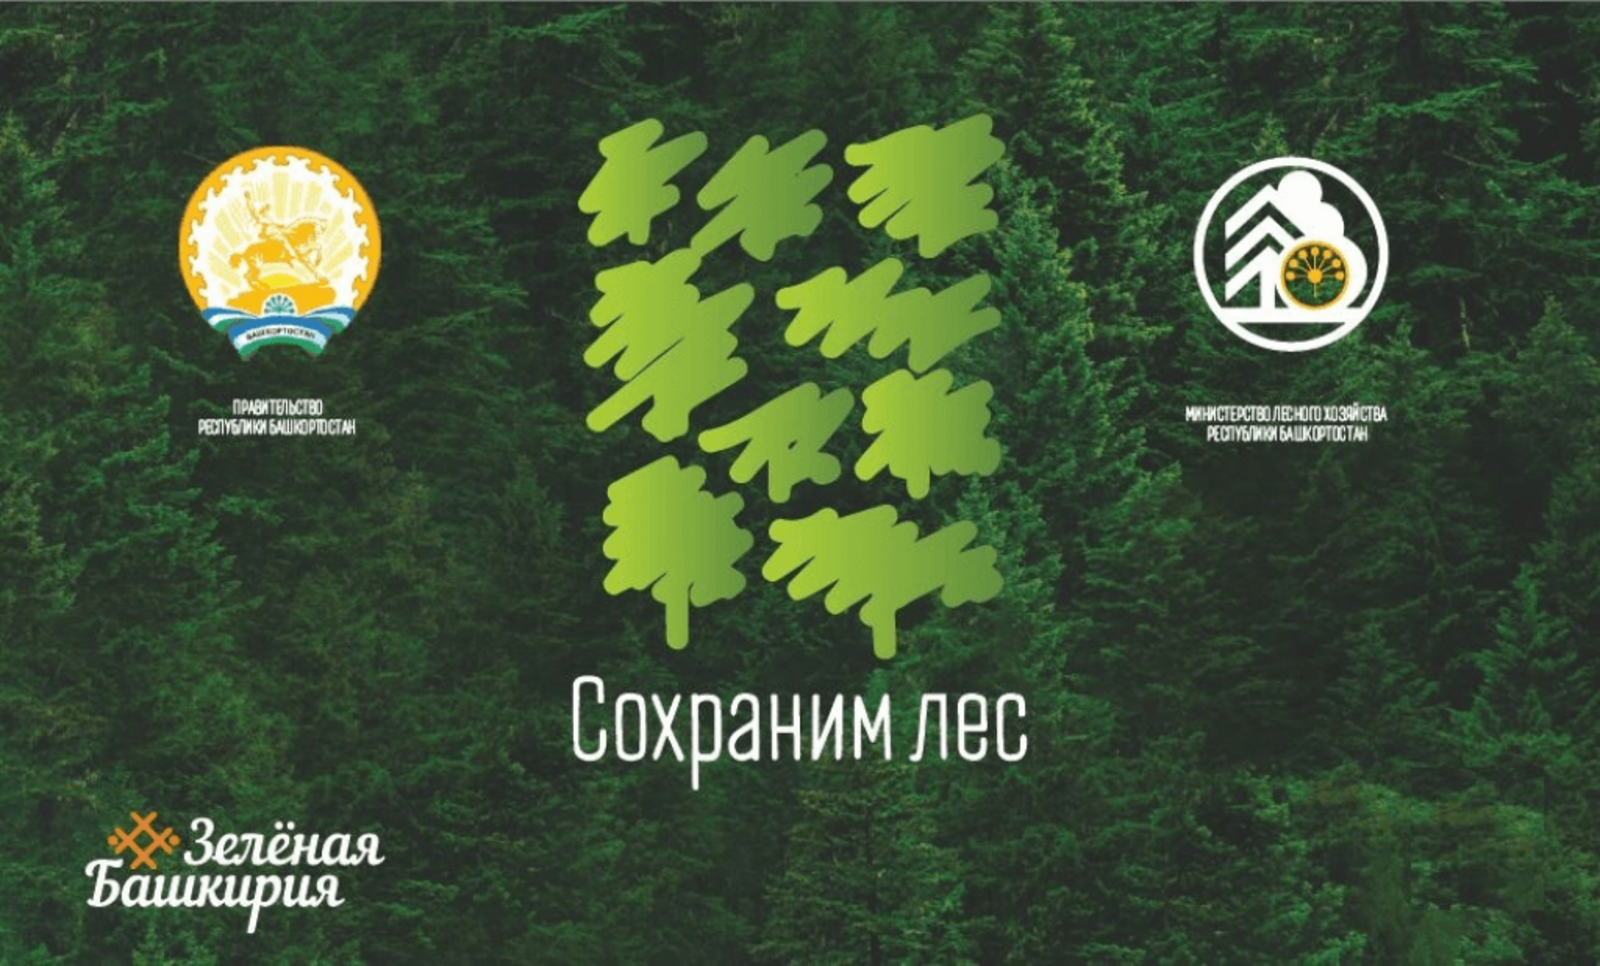 В рамках Всероссийской акции «Сохраним лес» башкирские лесоводы высадят 300 тысяч новых деревьев????